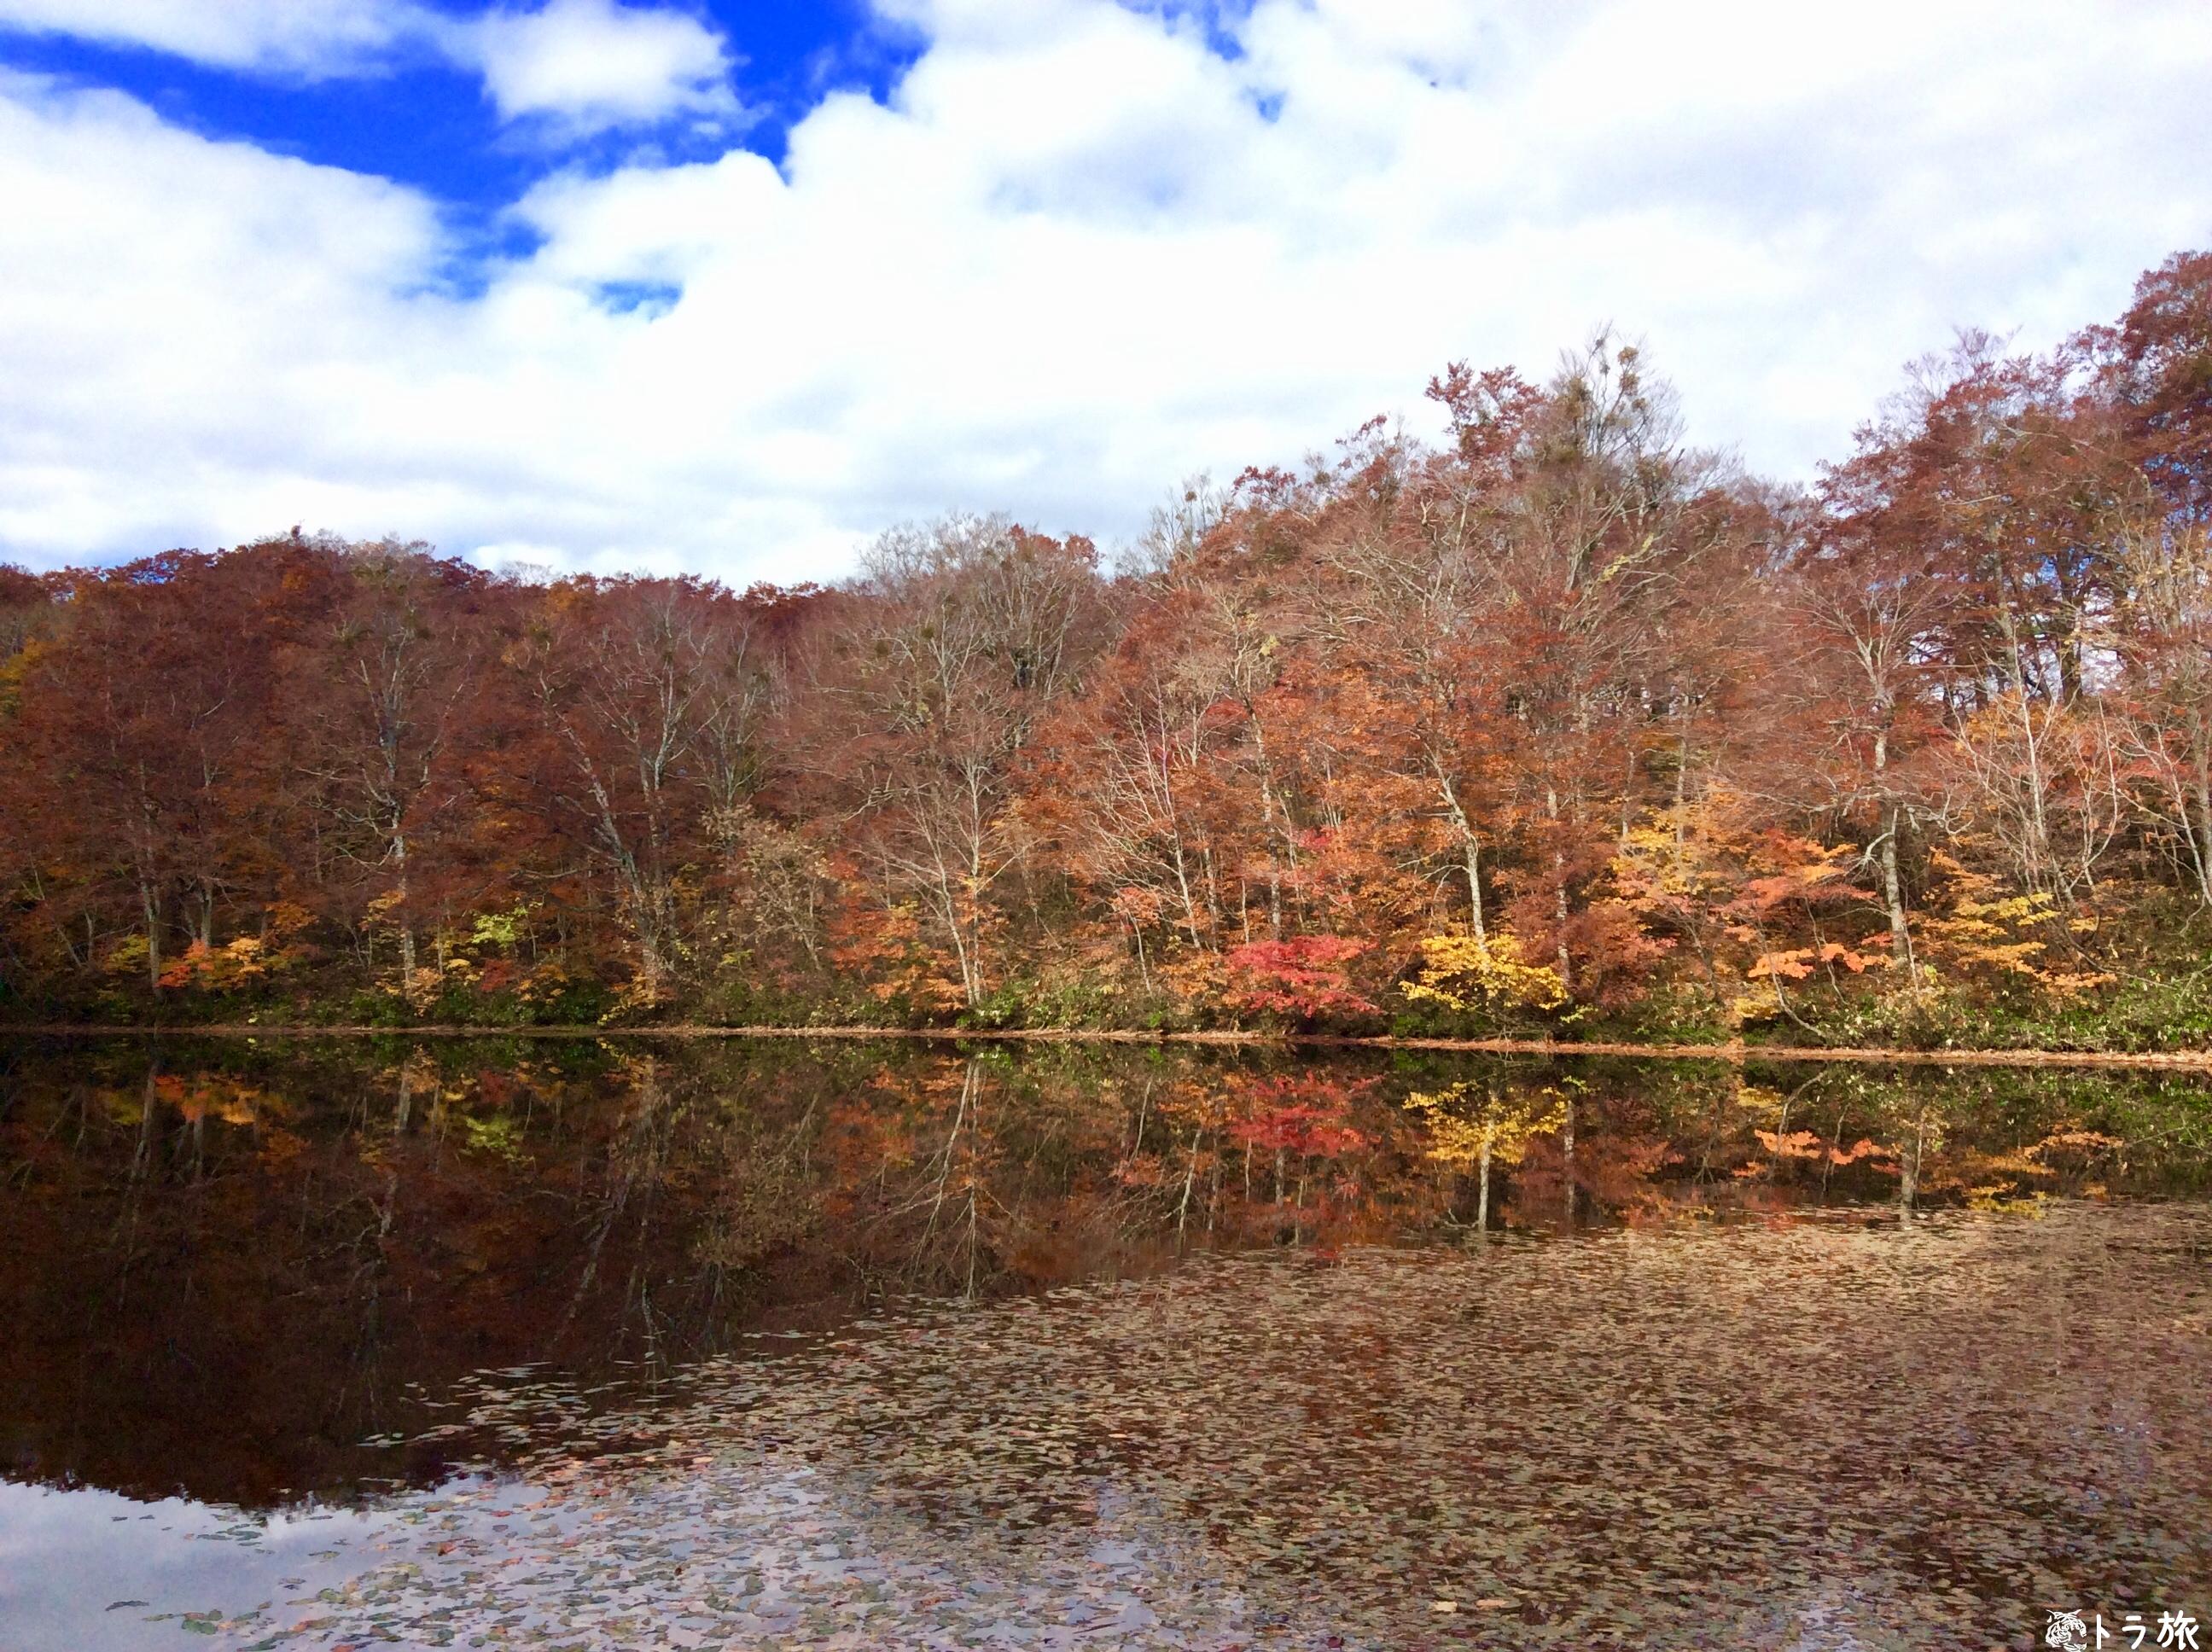 福井県の紅葉が綺麗な刈込池に行くときの注意点